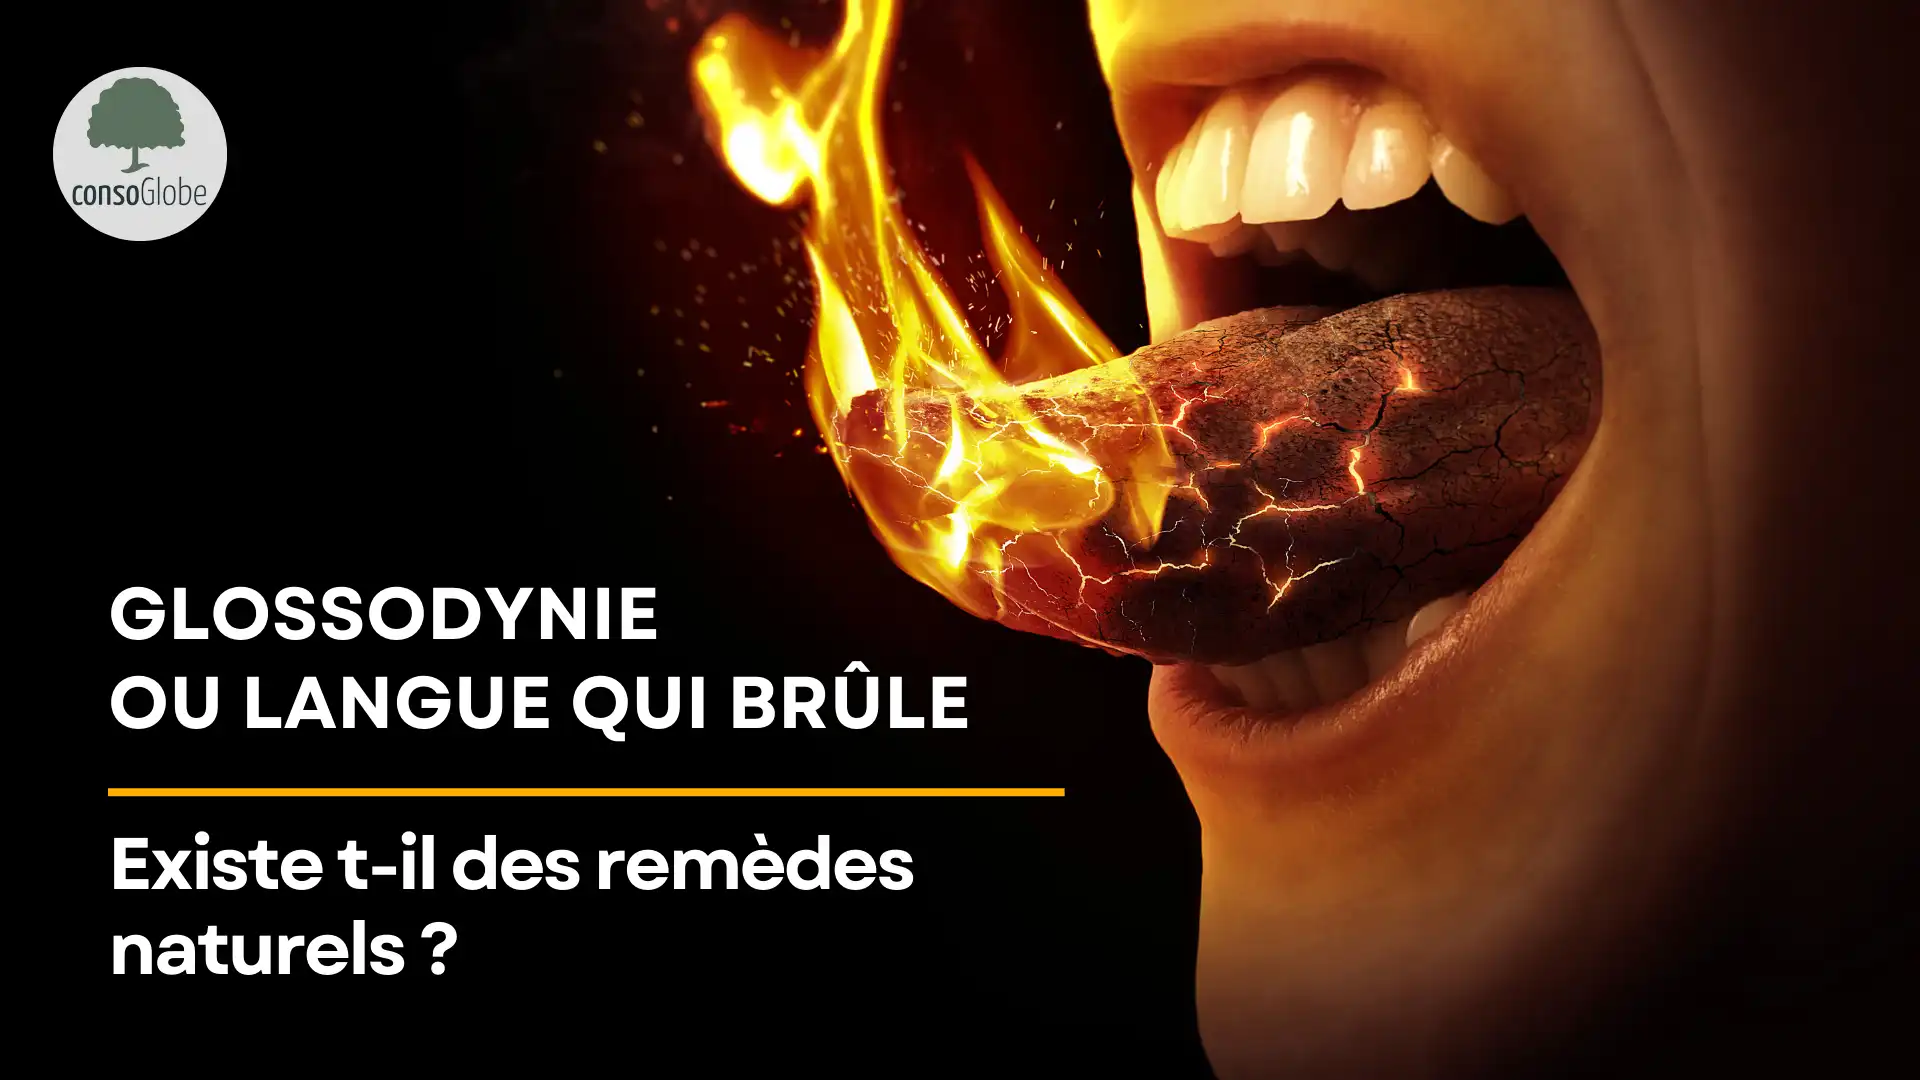 Glossodynie ou langue qui brûle : existe t-il des remèdes naturels ?